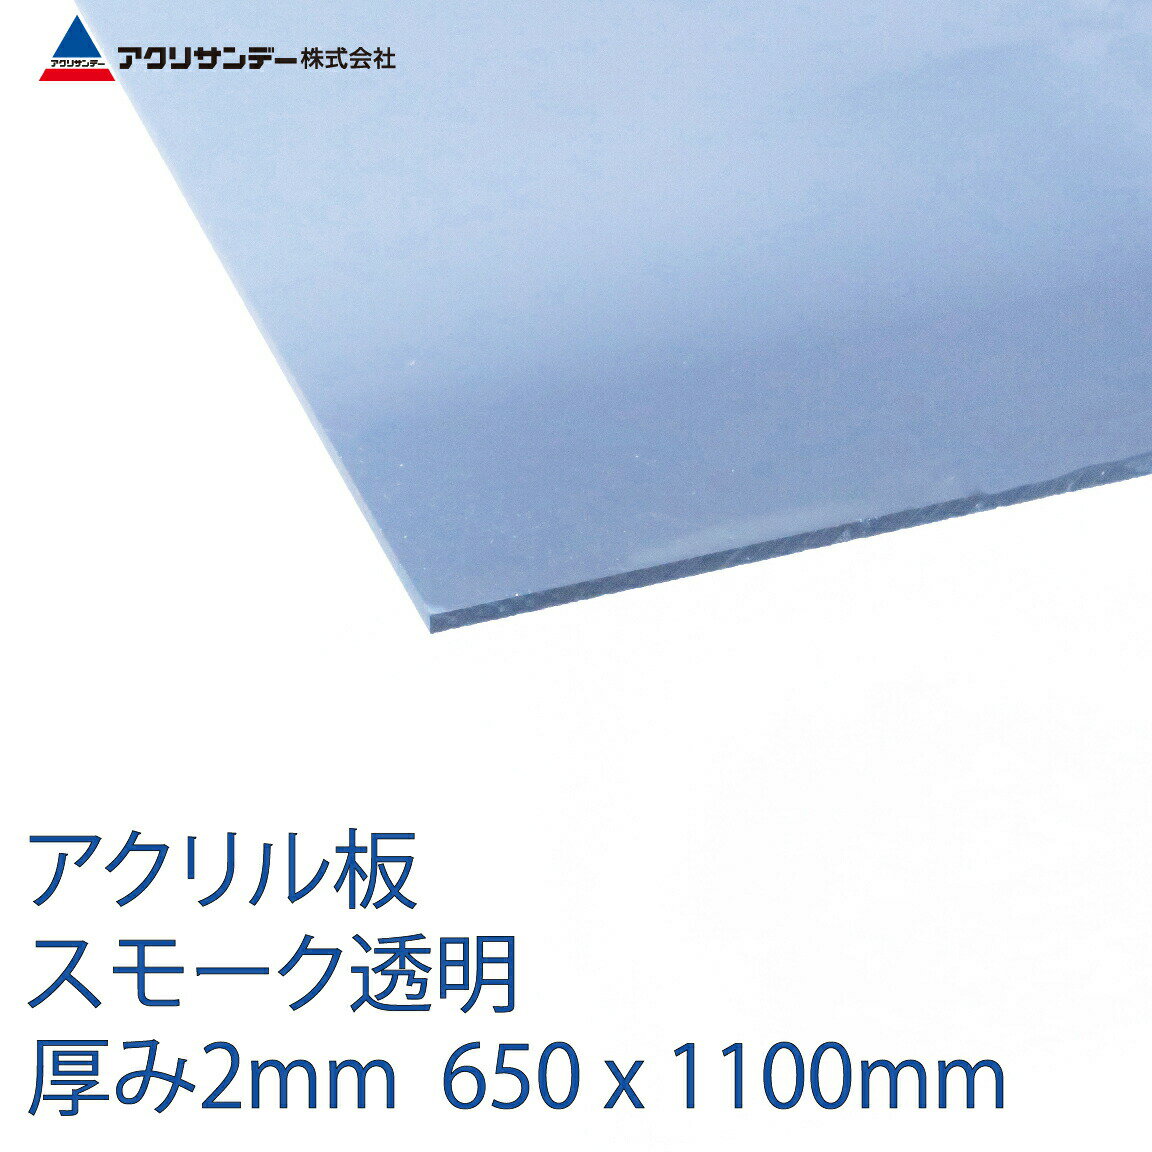 アクリル スモーク(530) 透明 厚み2mm 650×1100mm キャスト板 Lサイズ プラスチック 色板 DIY アクリサンデー